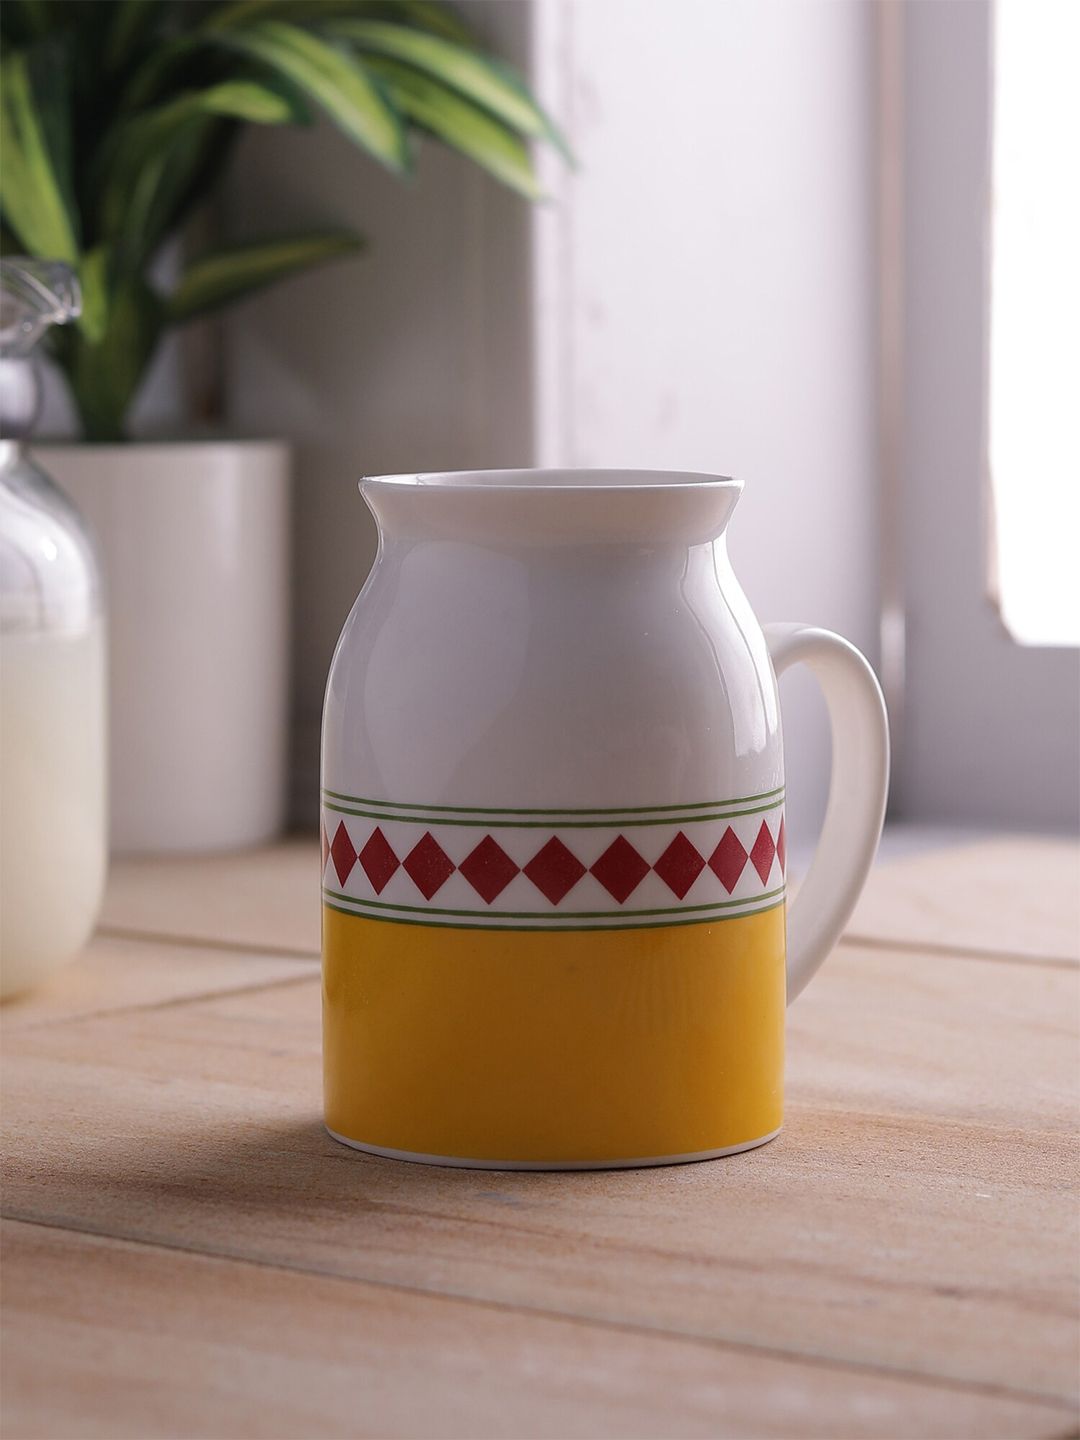 CLAY CRAFT White & Yellow Printed Ceramic Mugs 300 ml Price in India